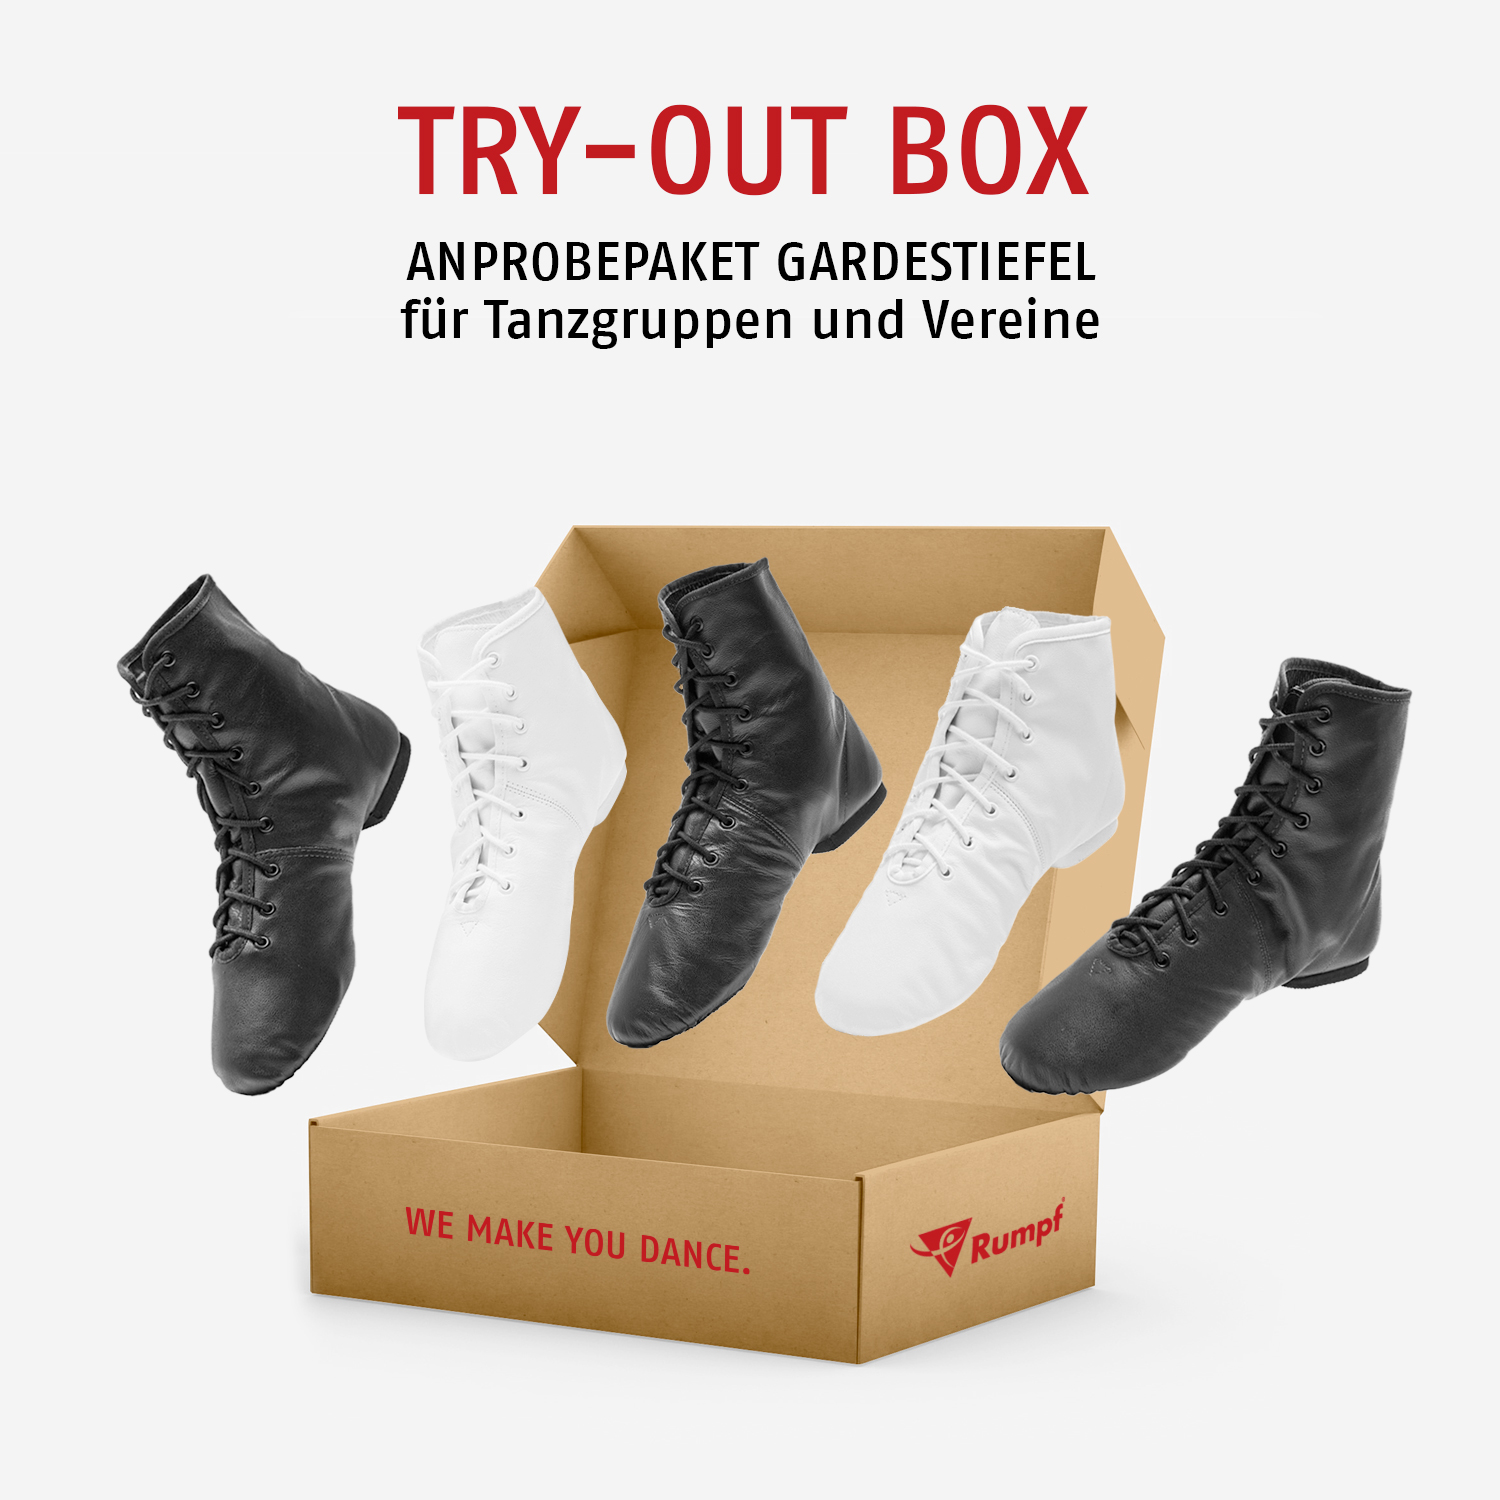 Try-Out Box für Tanzgruppen und Vereine 4125-29